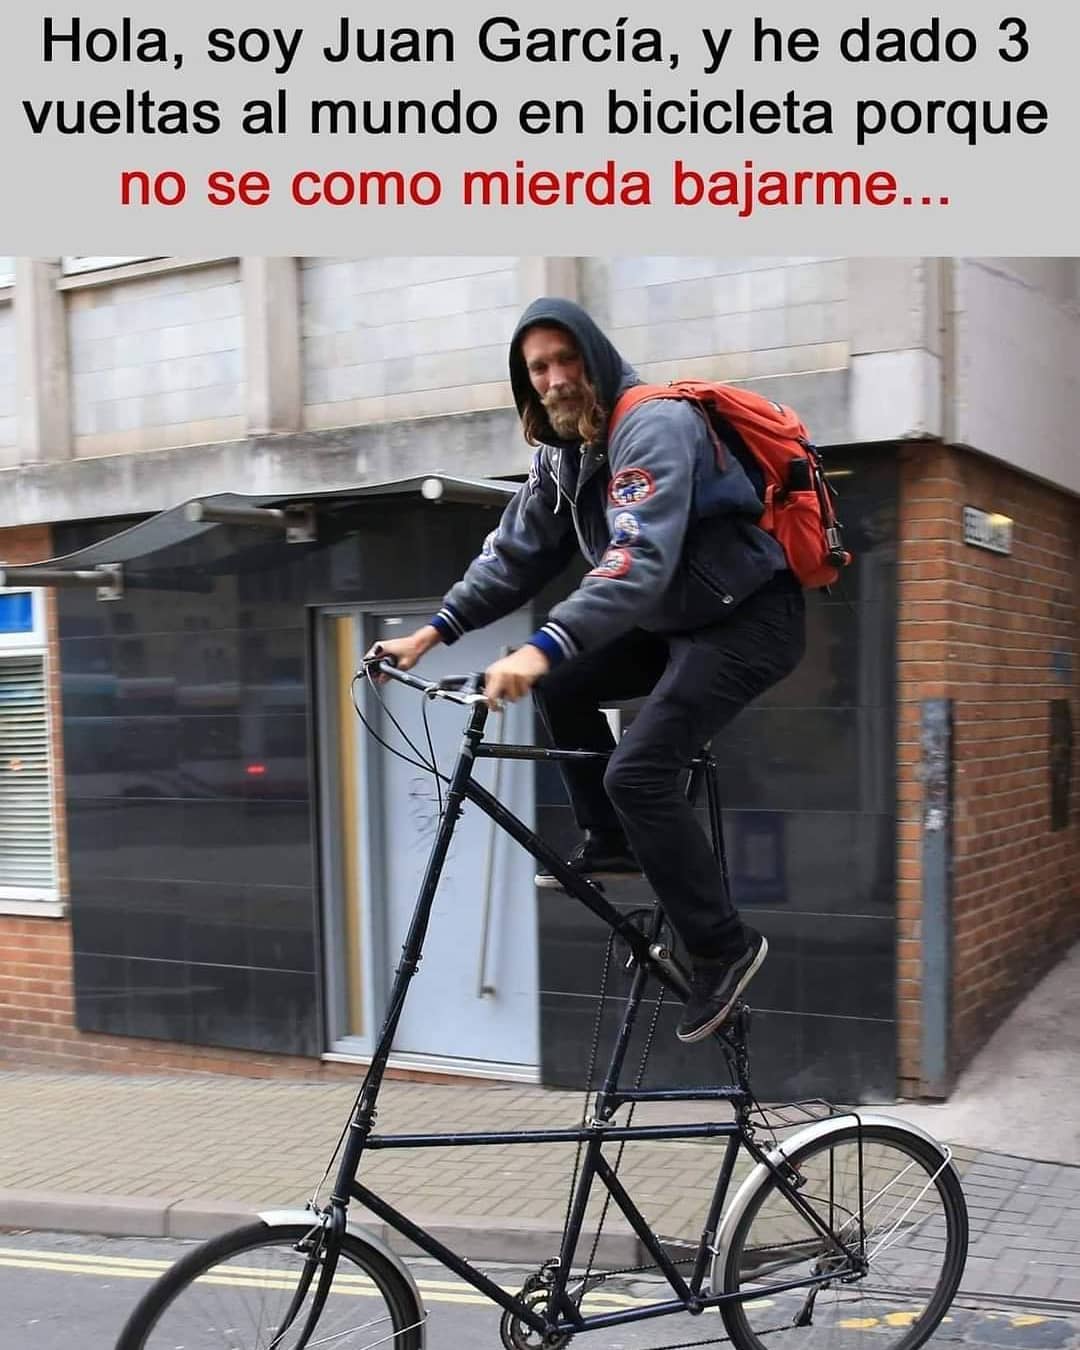 Hola, soy Juan García, y he dado 3 vueltas al mundo en bicicleta porque no sé como mierda bajarme.